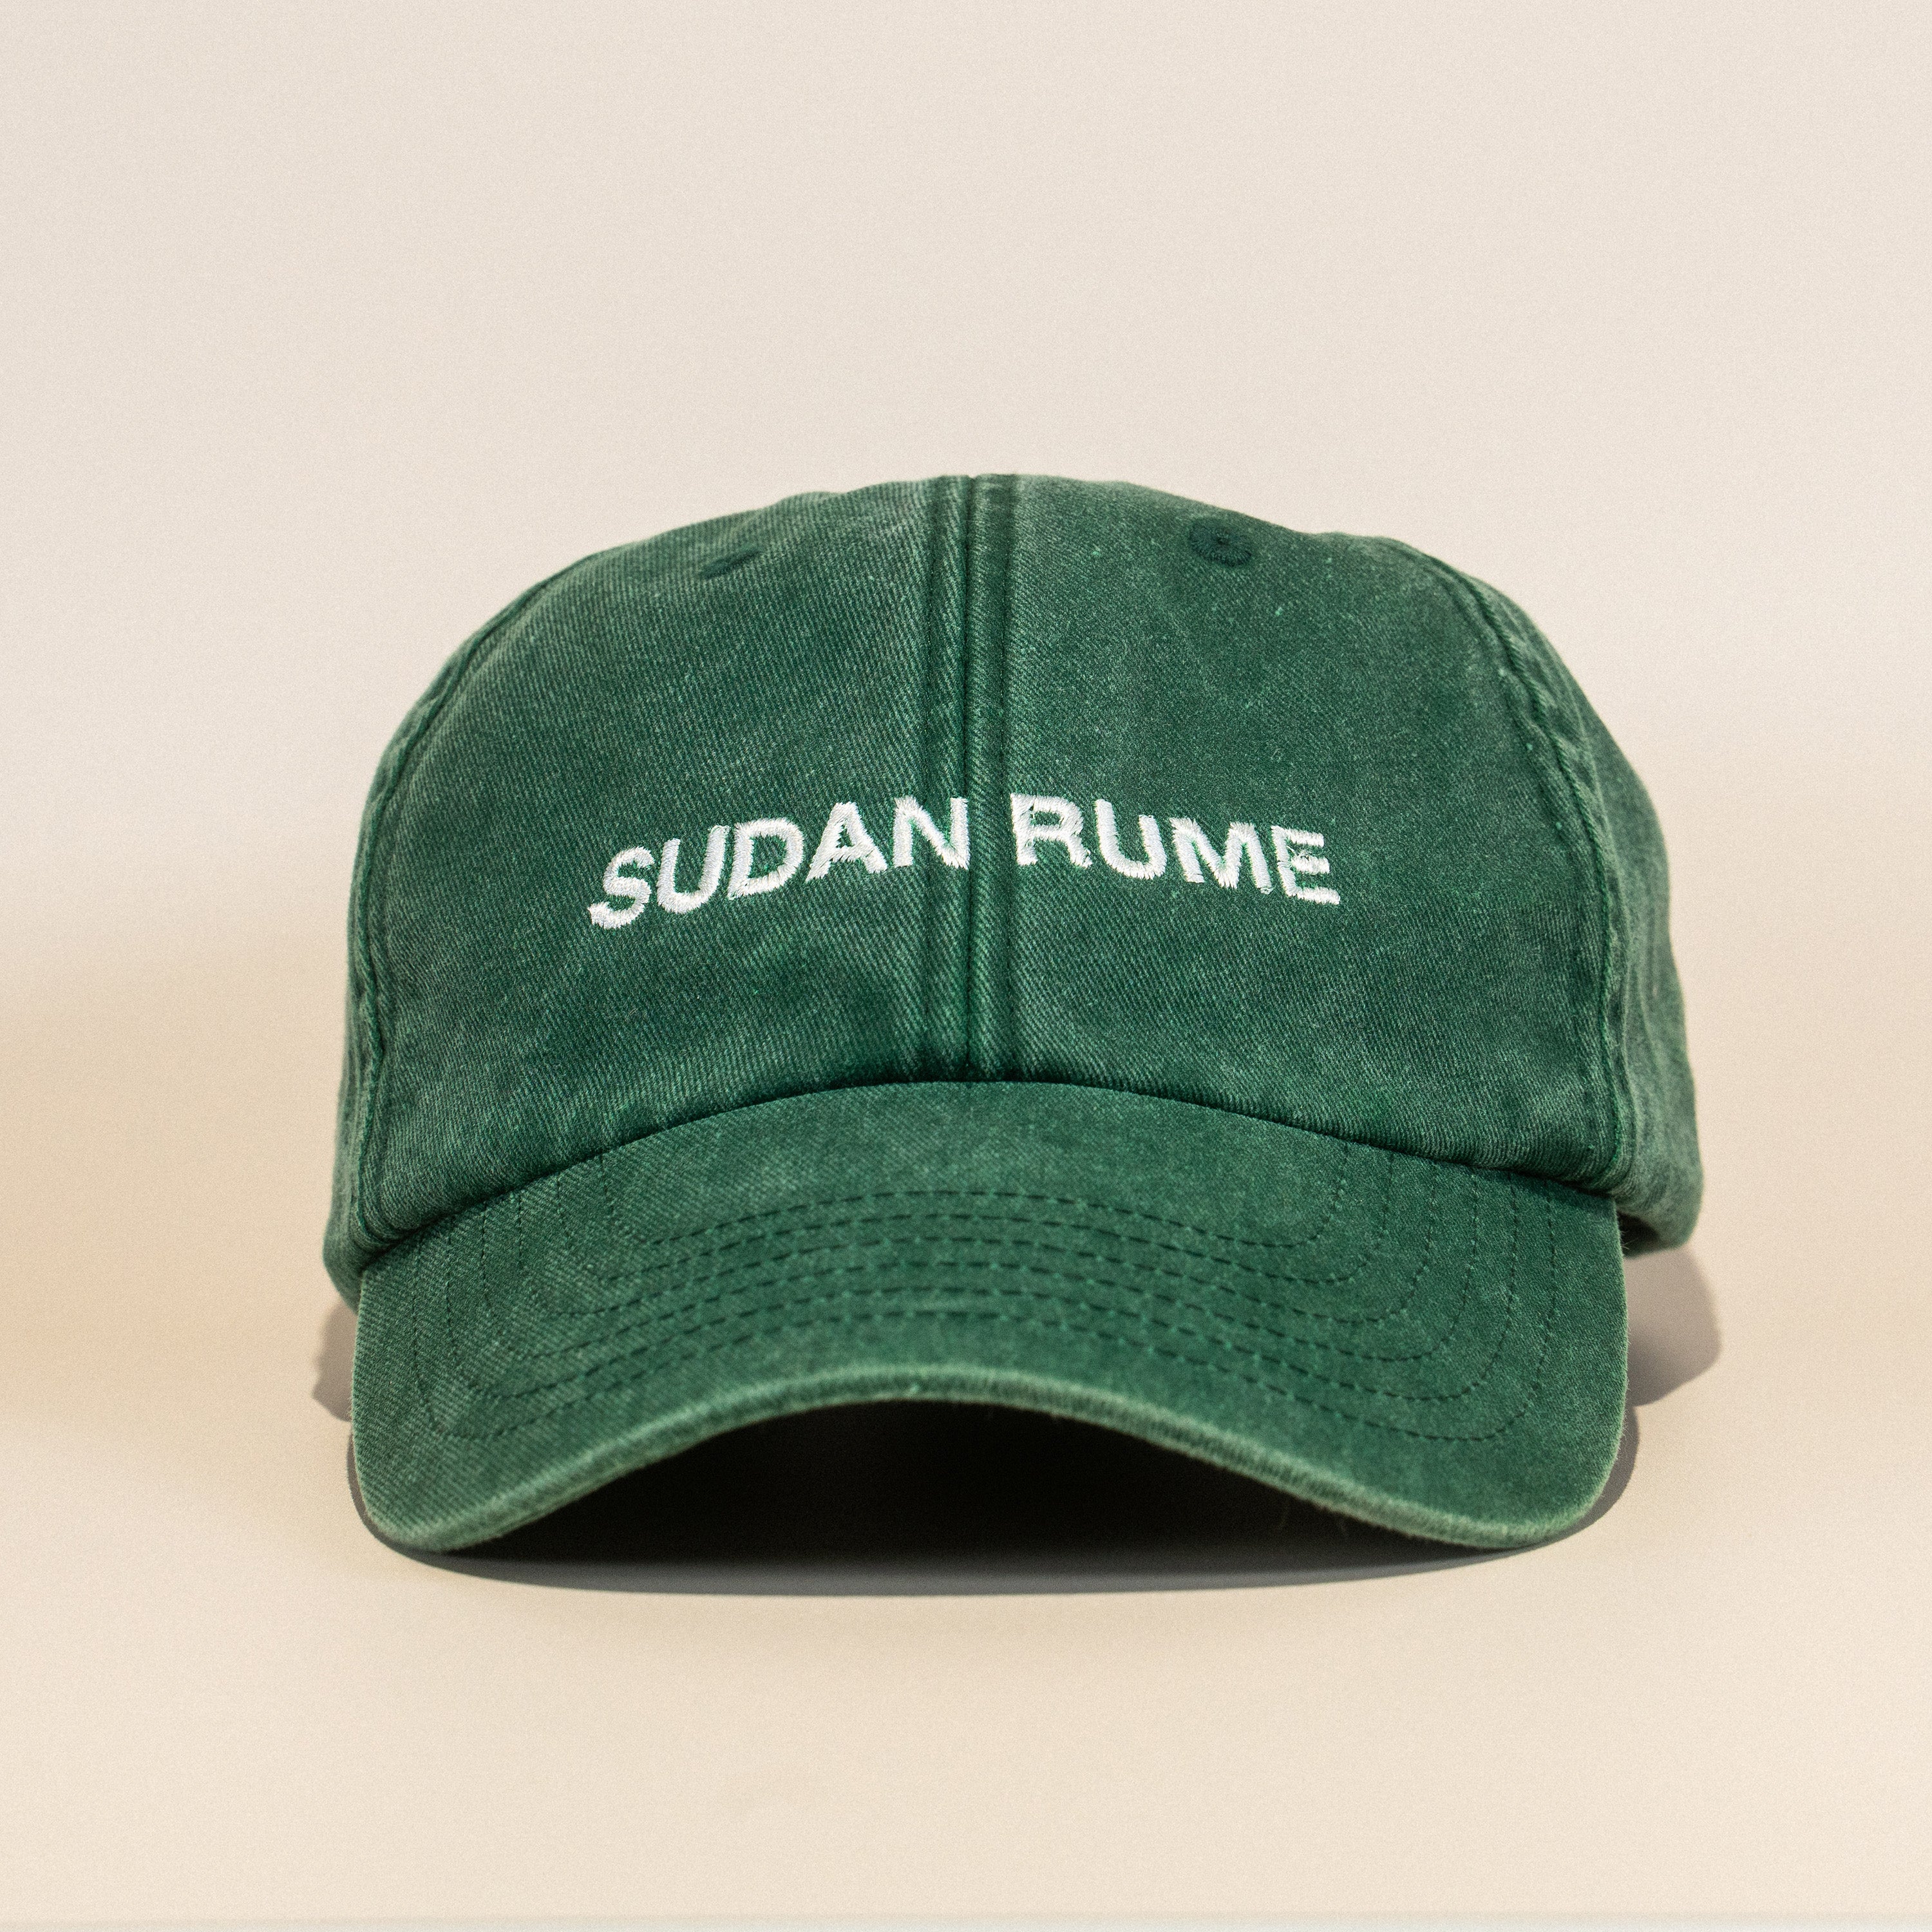 Sudan Rume (Washed Green) Varietal 6 Panel Cap